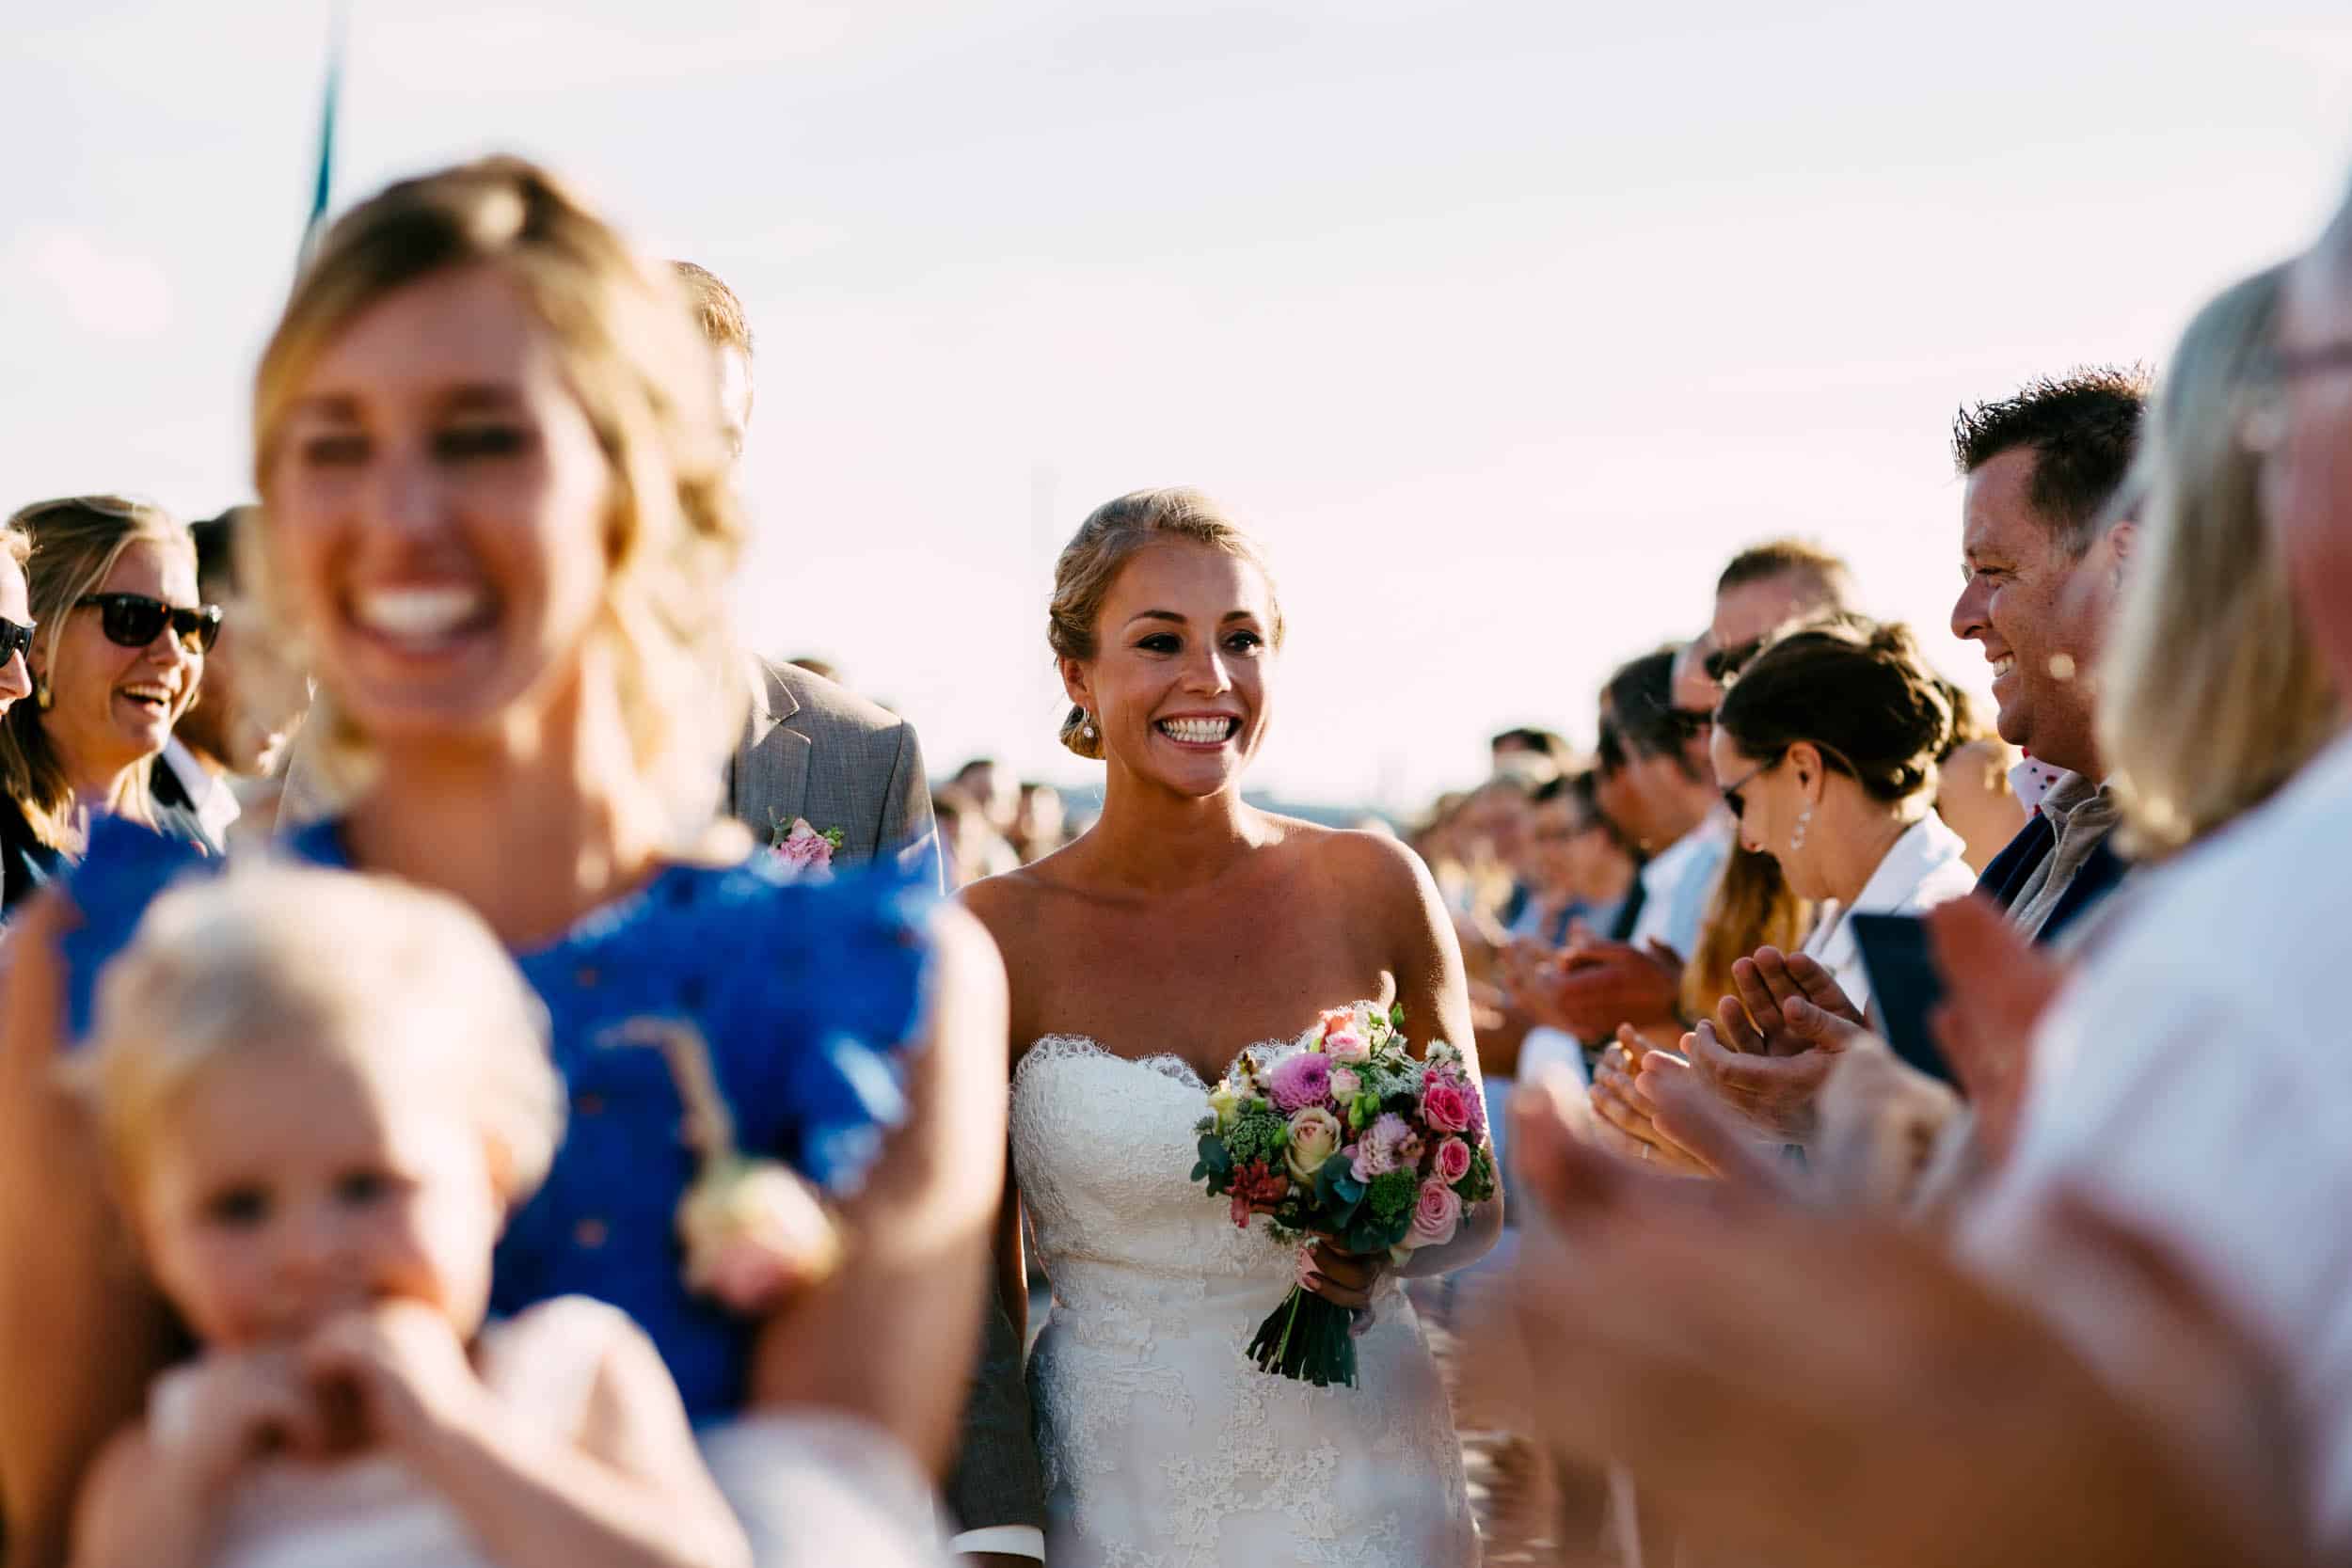 A bride walks down the aisle at a wedding.